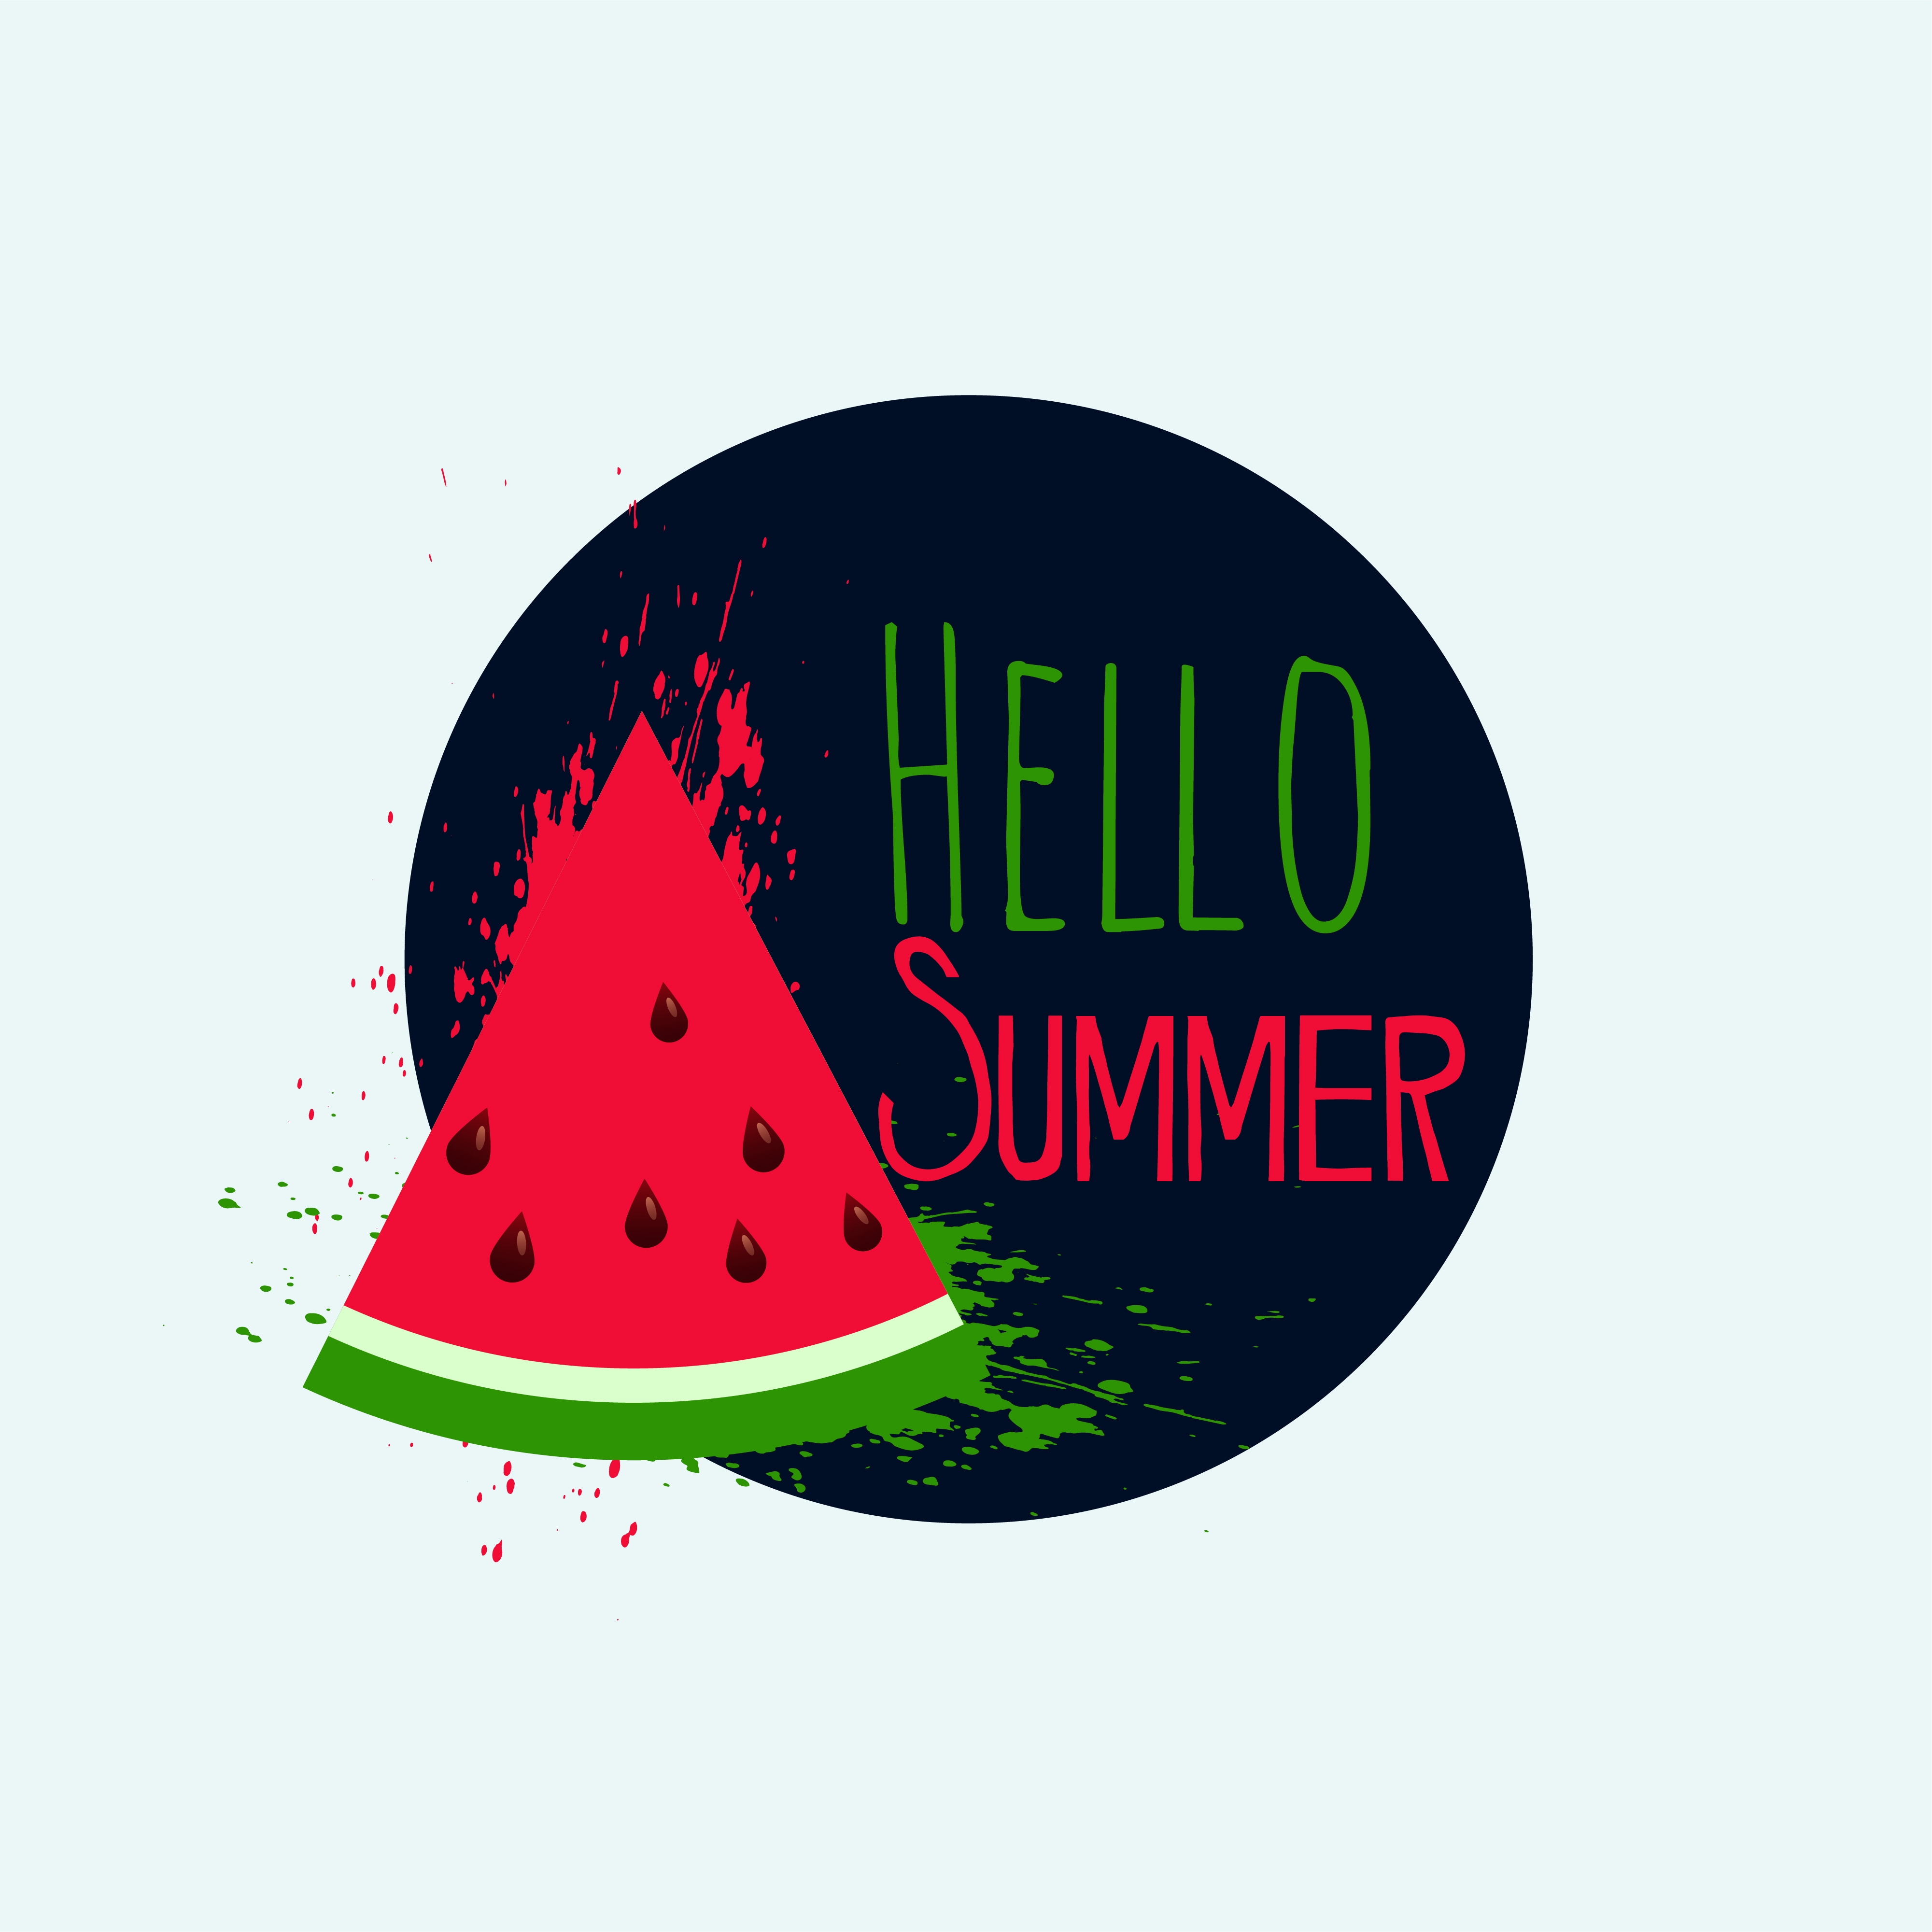 Download hello summer watermelon background design - Download Free ...